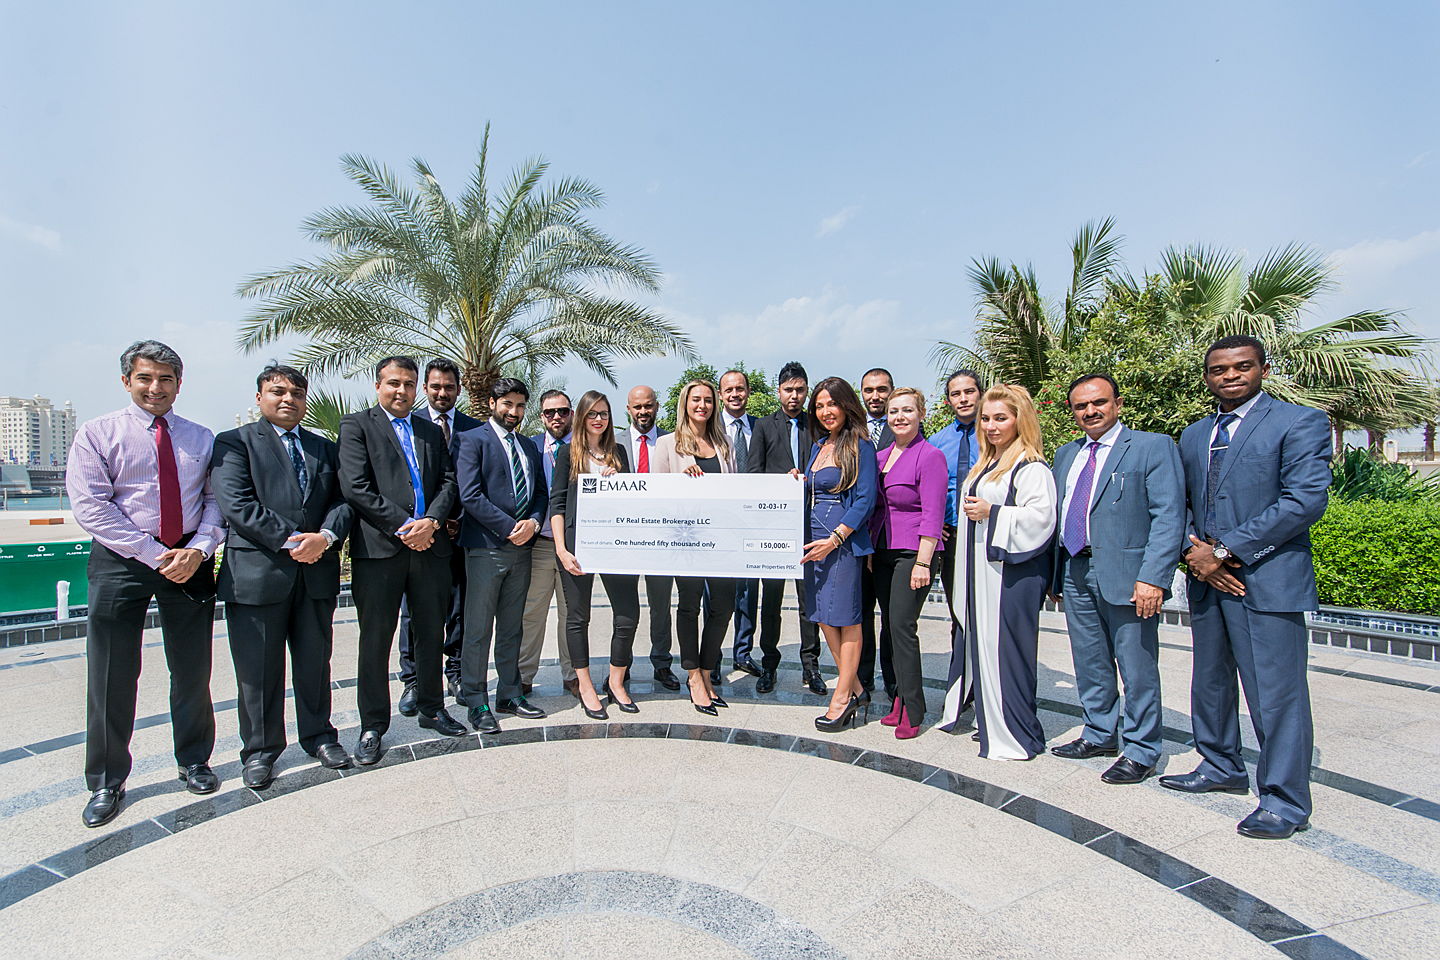  Dubai, United Arab Emirates
- sales team emaar award